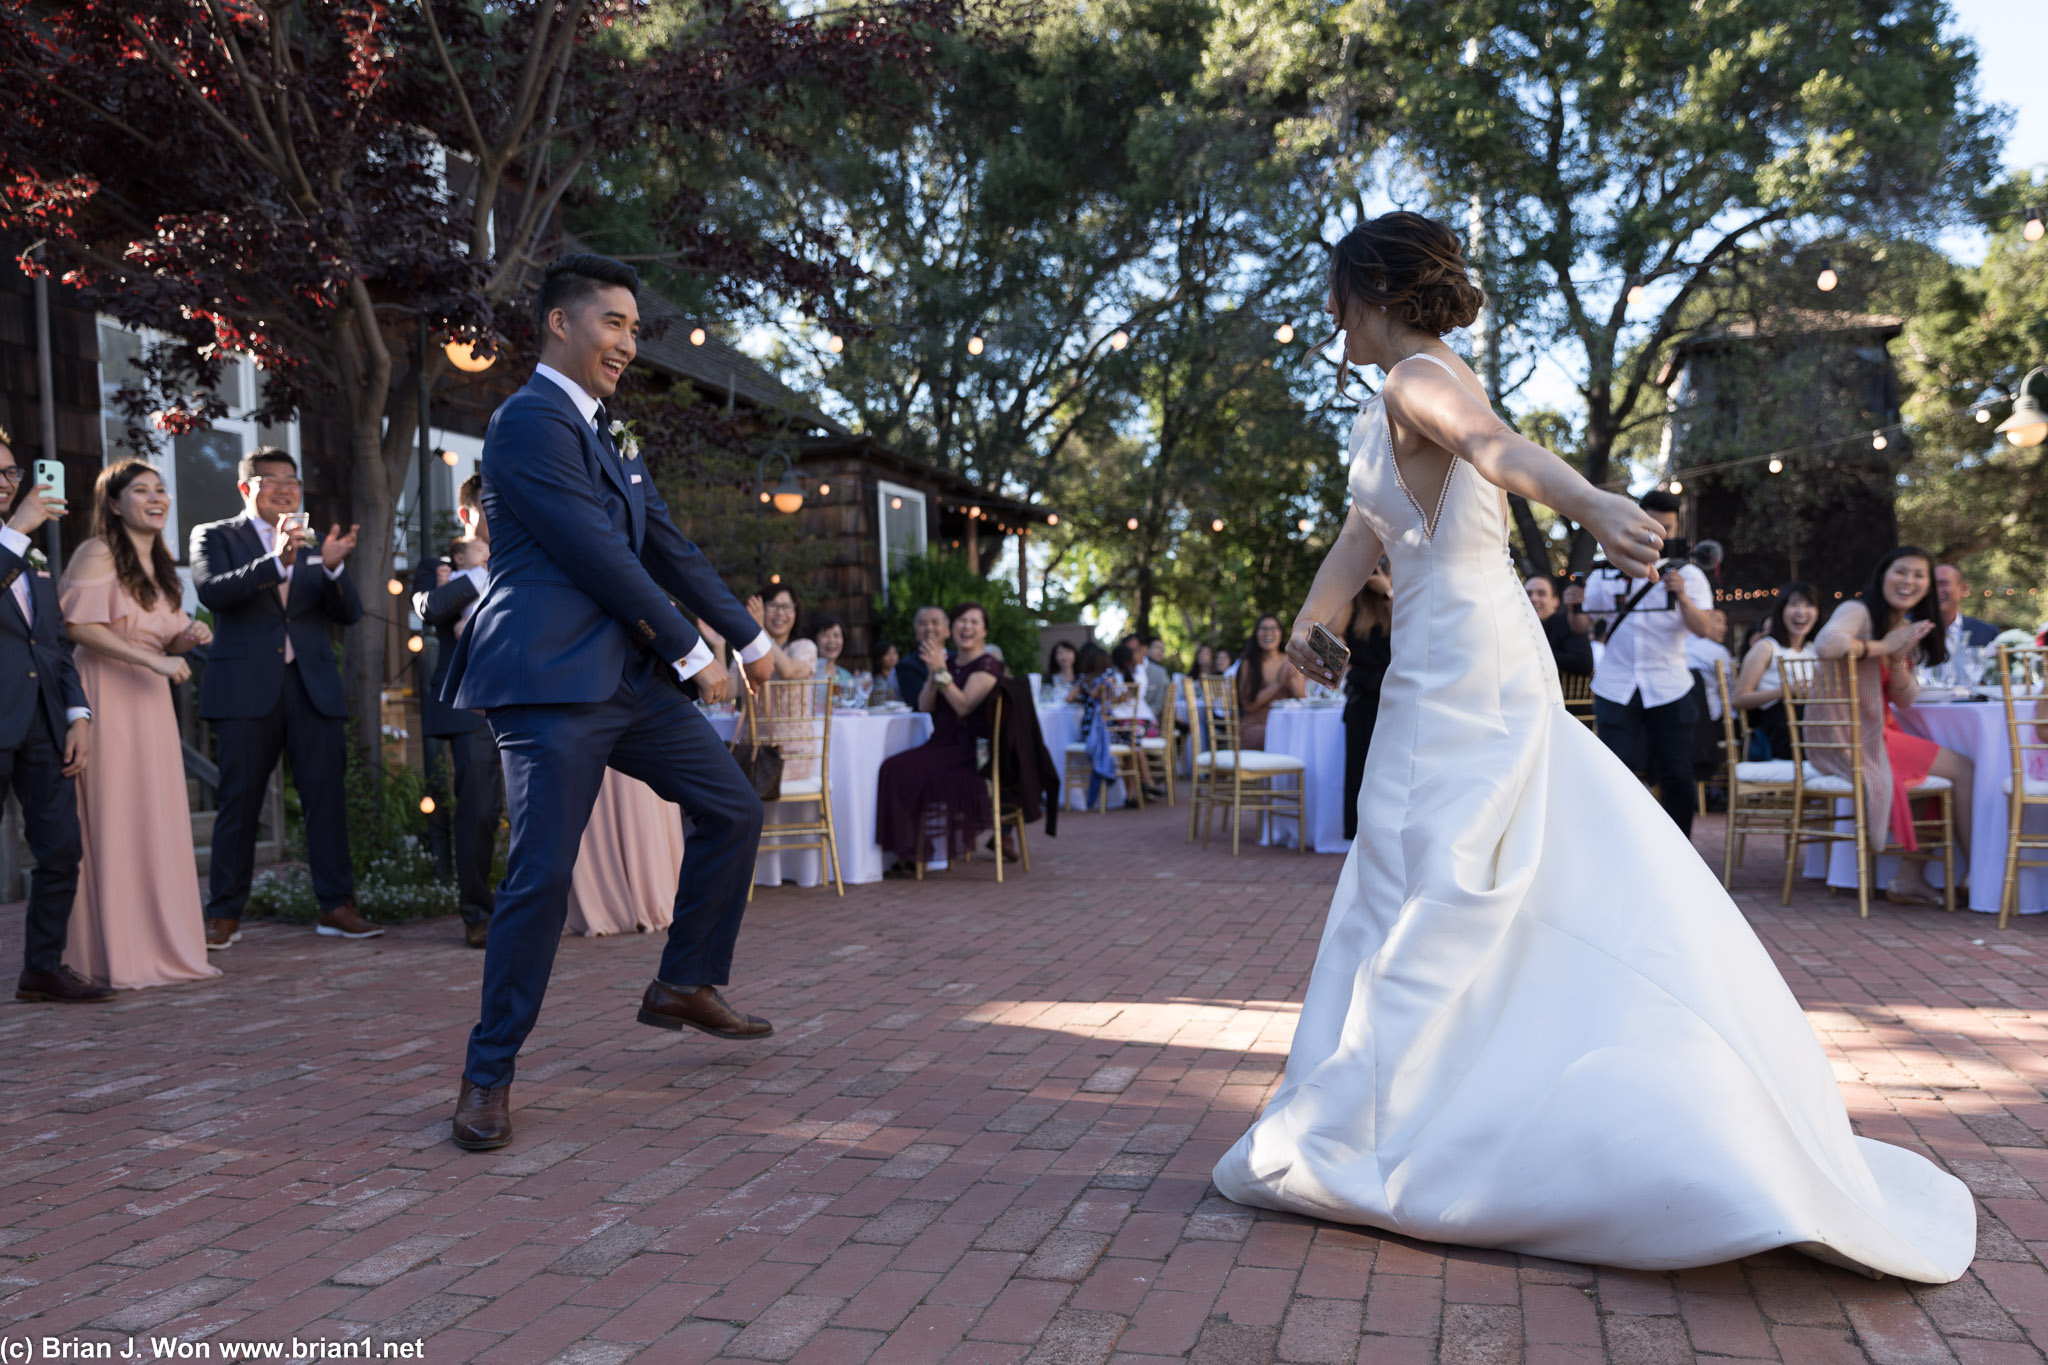 The bride and groom begin dancing immediately.